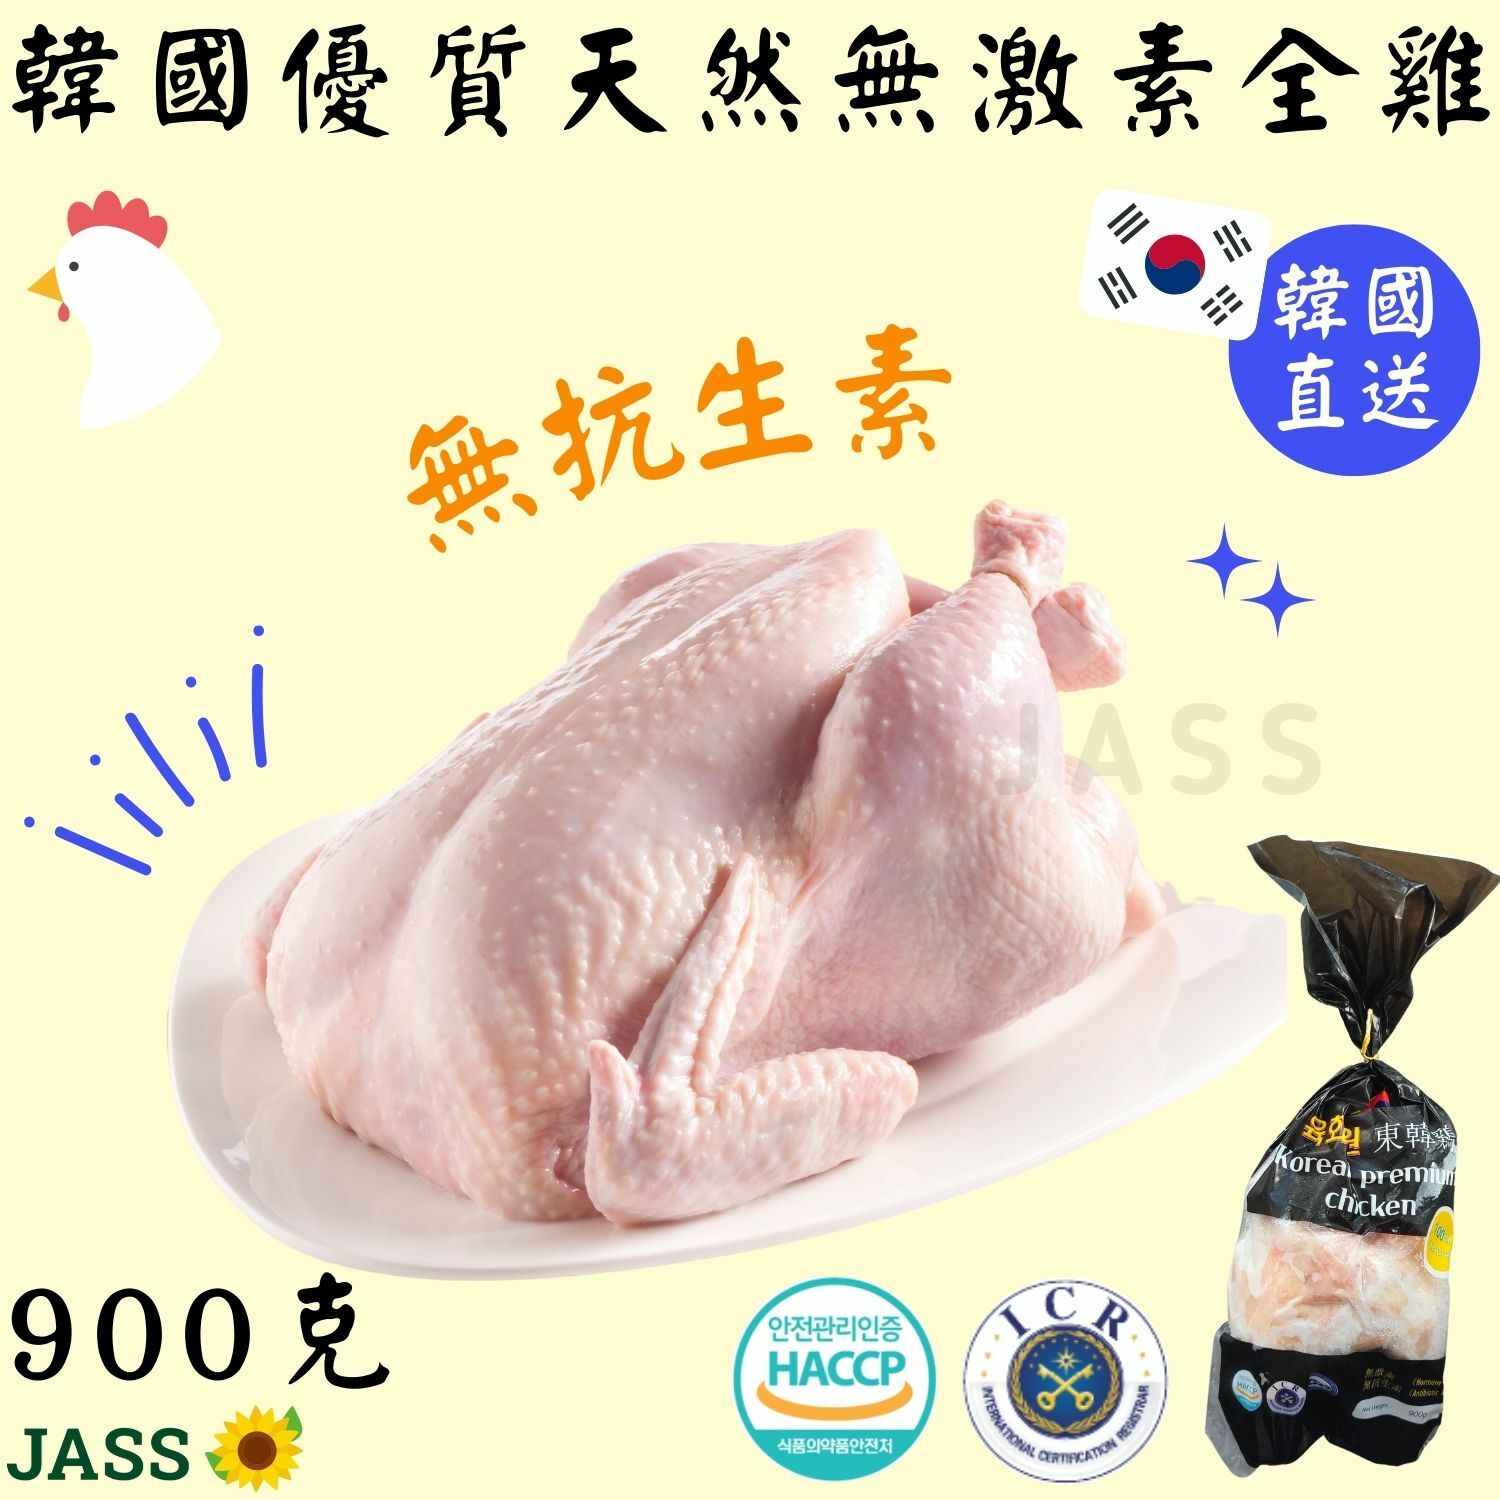 韓國食品-한국냉동닭 (닭백숙용) 1000g